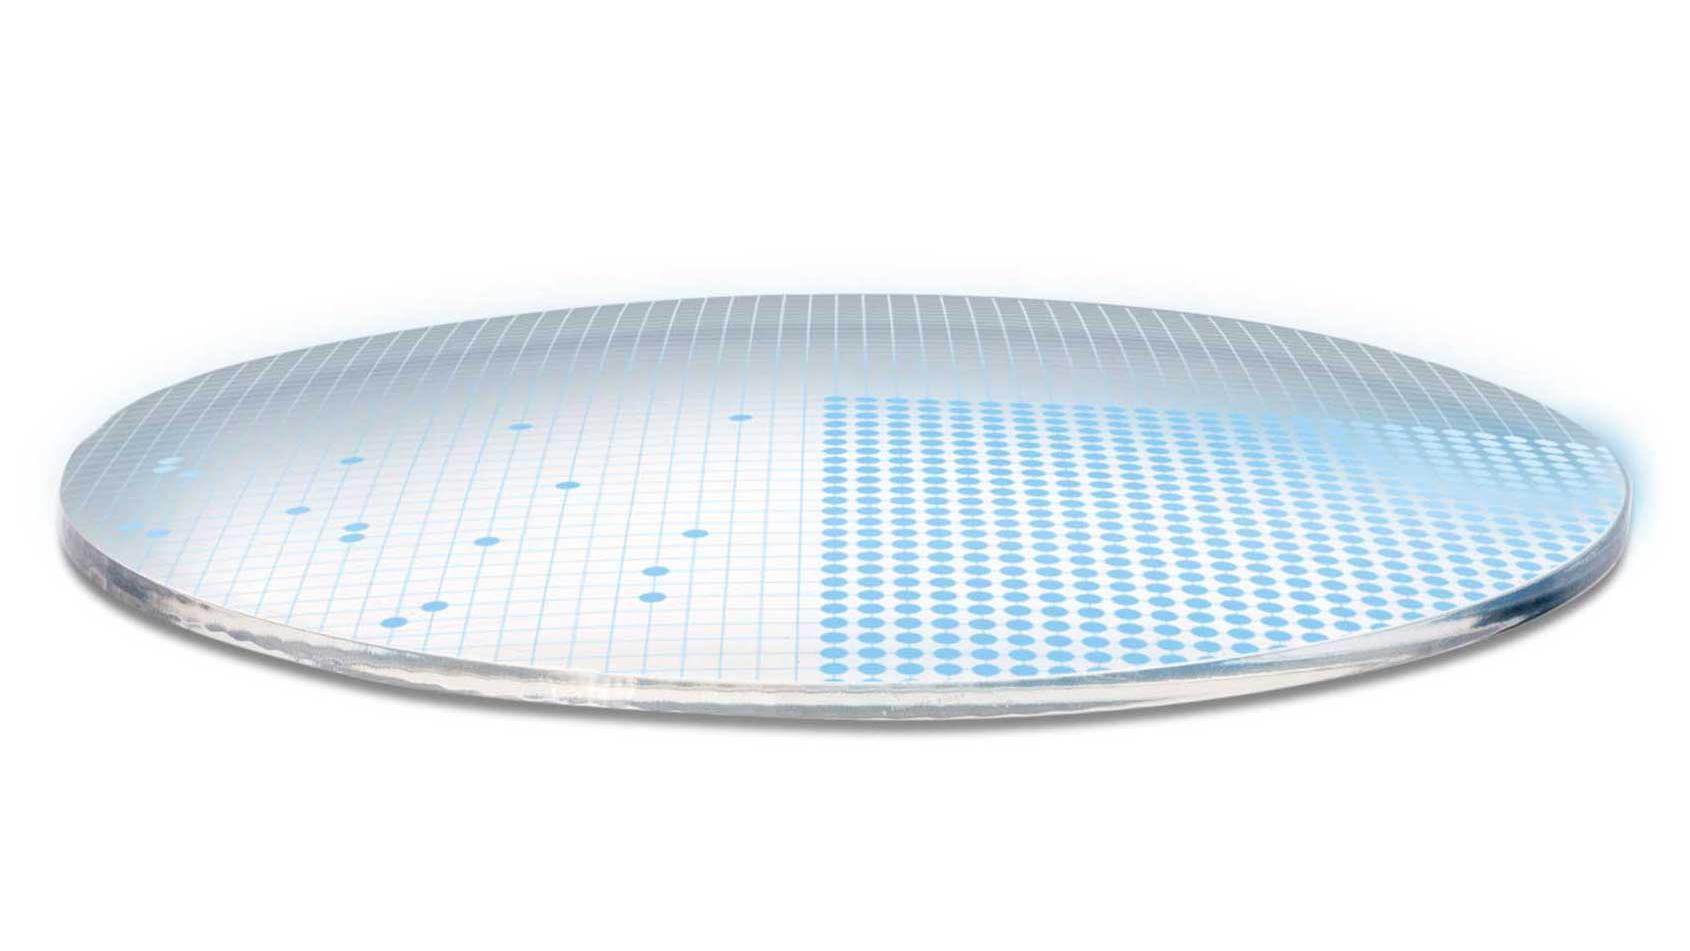 Trójwymiarowa ilustracja soczewki przedstawiająca 700 niebieskich kropek symbolizujących 700 parametrów zapewniających bardzo złożoną powierzchnię soczewki.